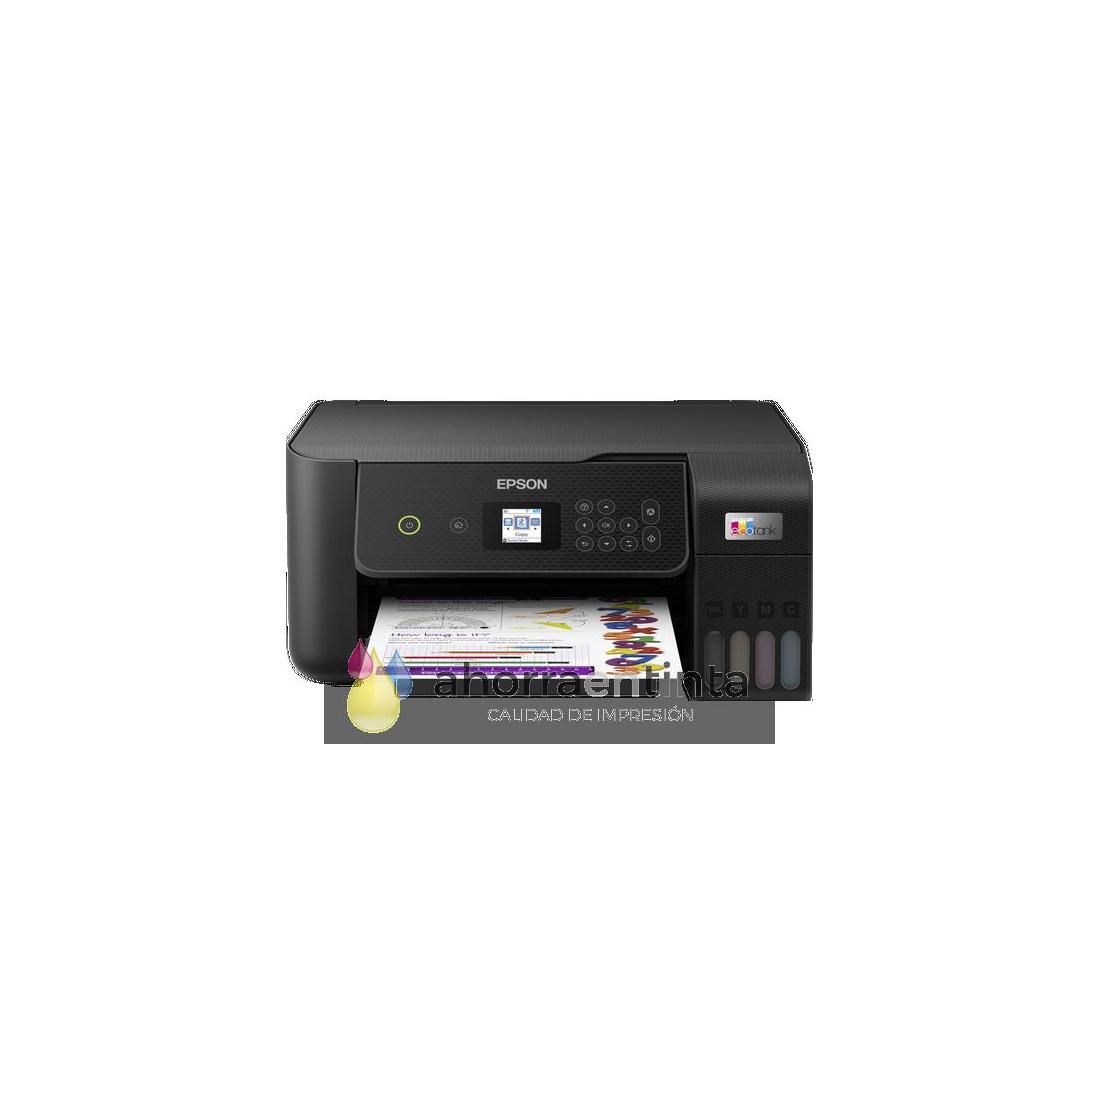 Las mejores ofertas en Impresoras Epson Sublimación de tinta